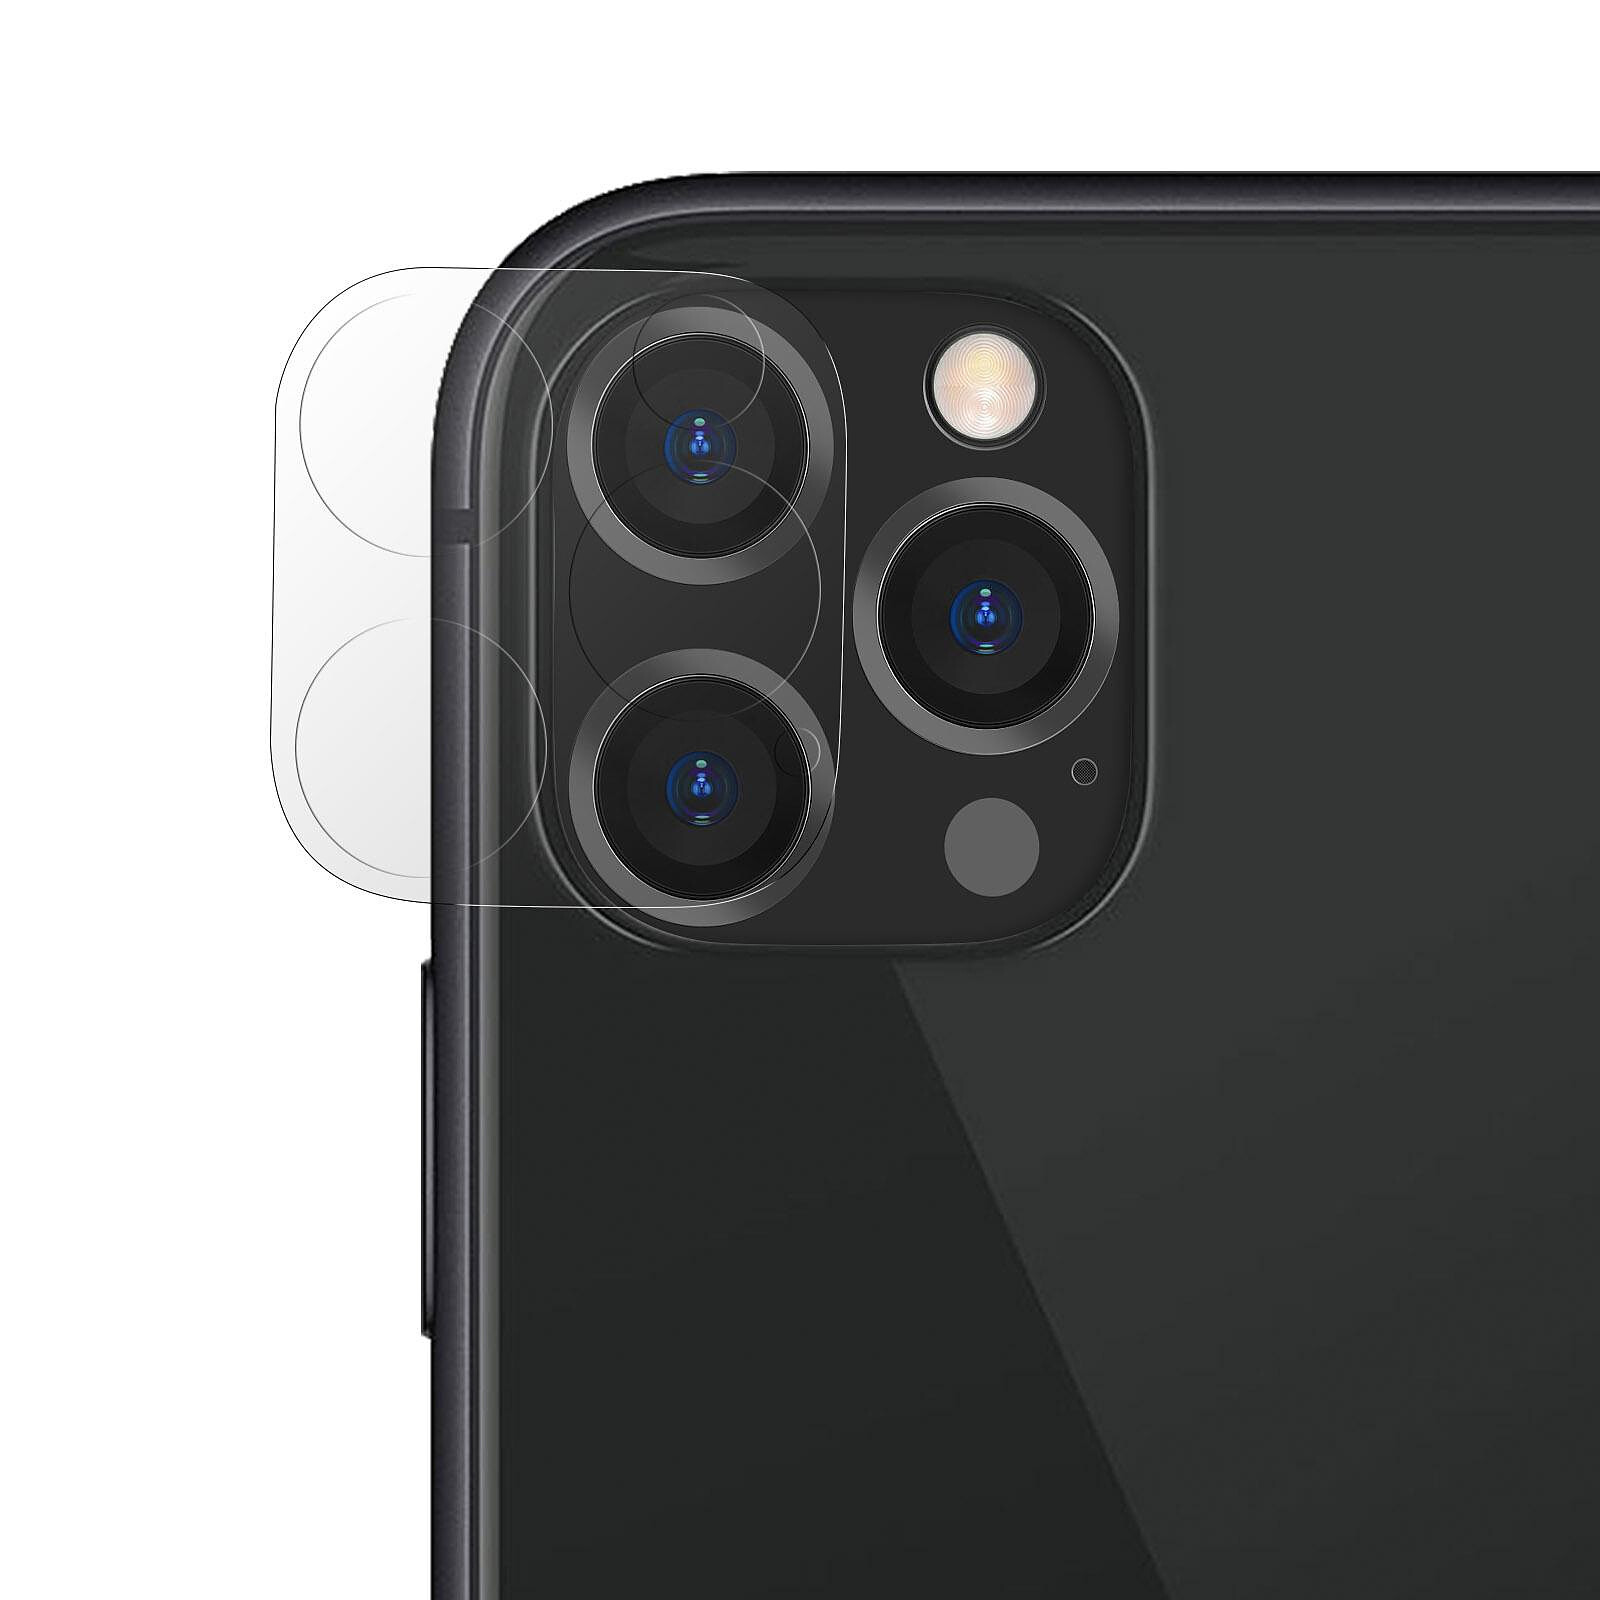 Verre Trempé Caméra Pour iPhone 12 Pro